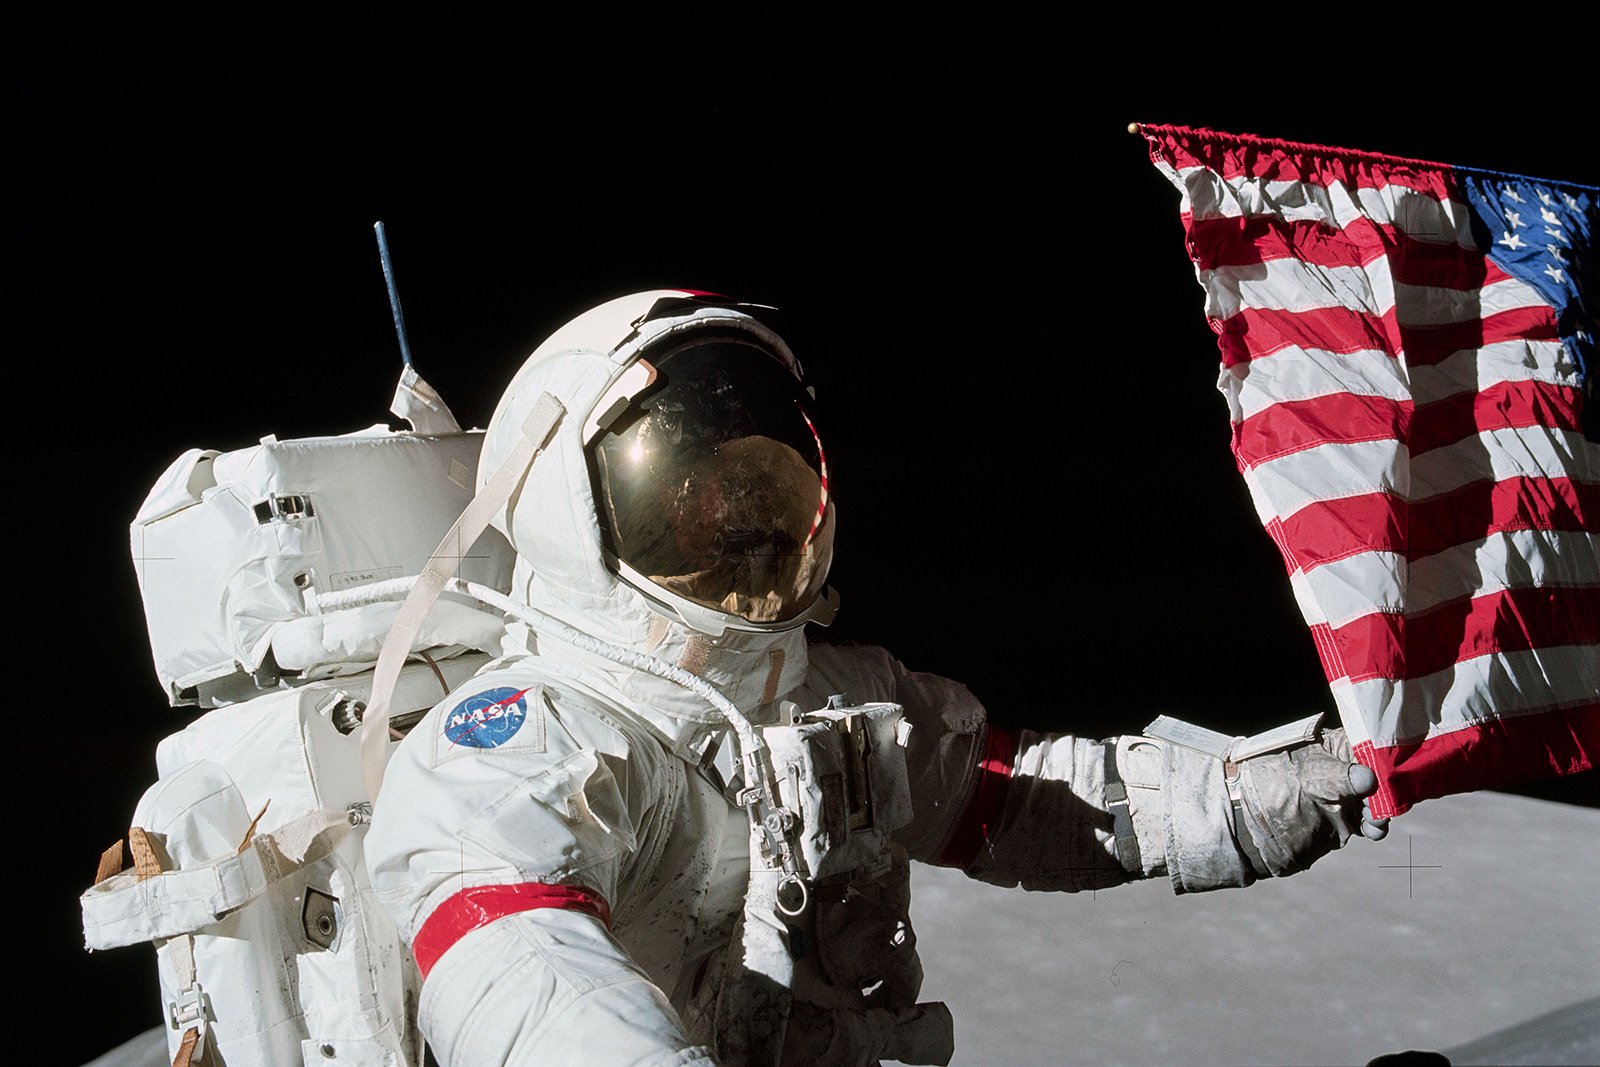 Как сделать селфи на фоне американского флага на Луне